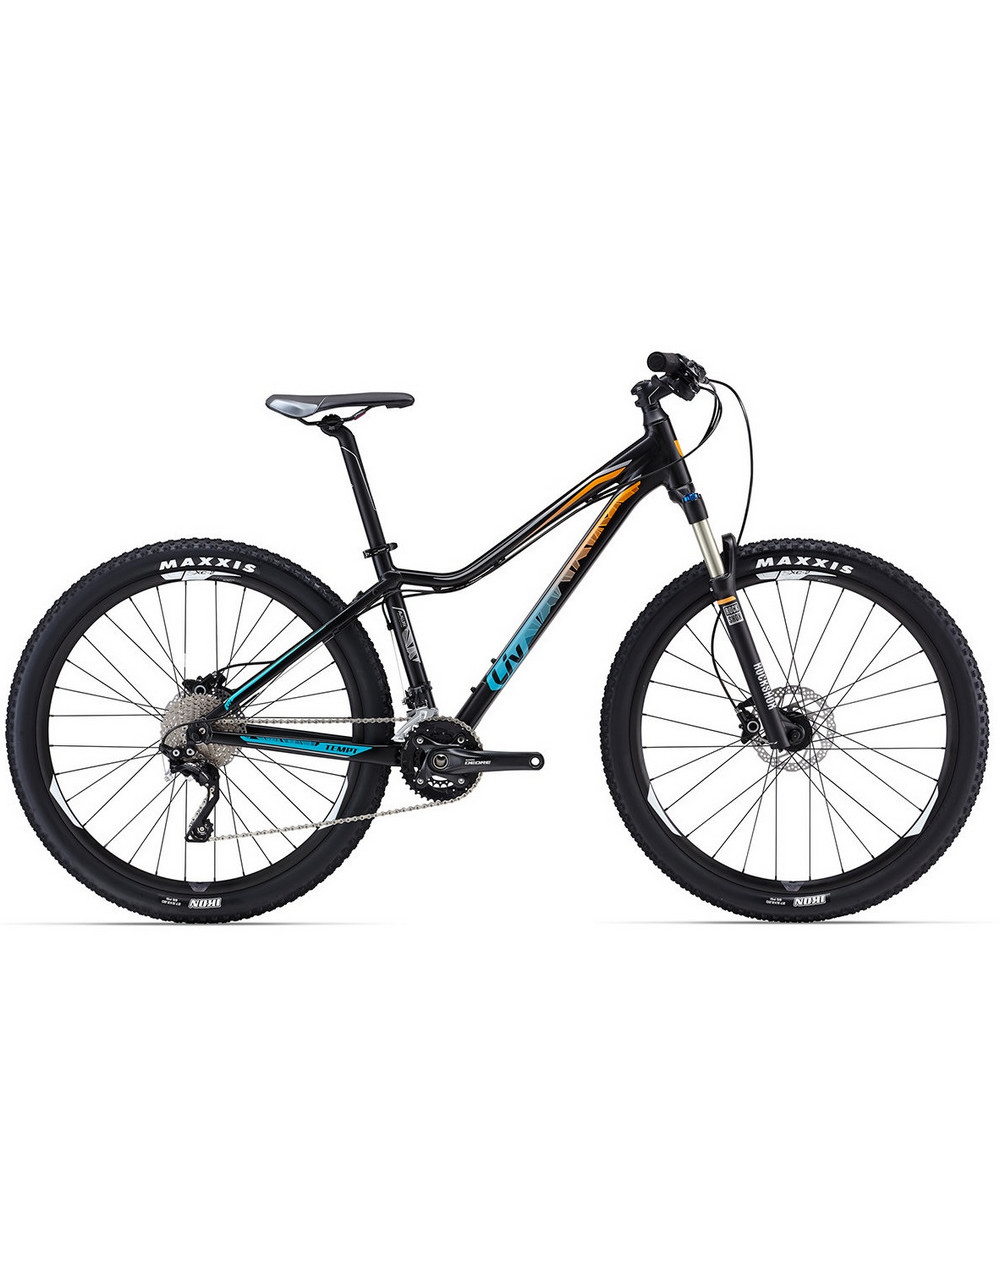 GIANT Велосипед TEMPT 1 27.5" 2016 Артикул: 6004061